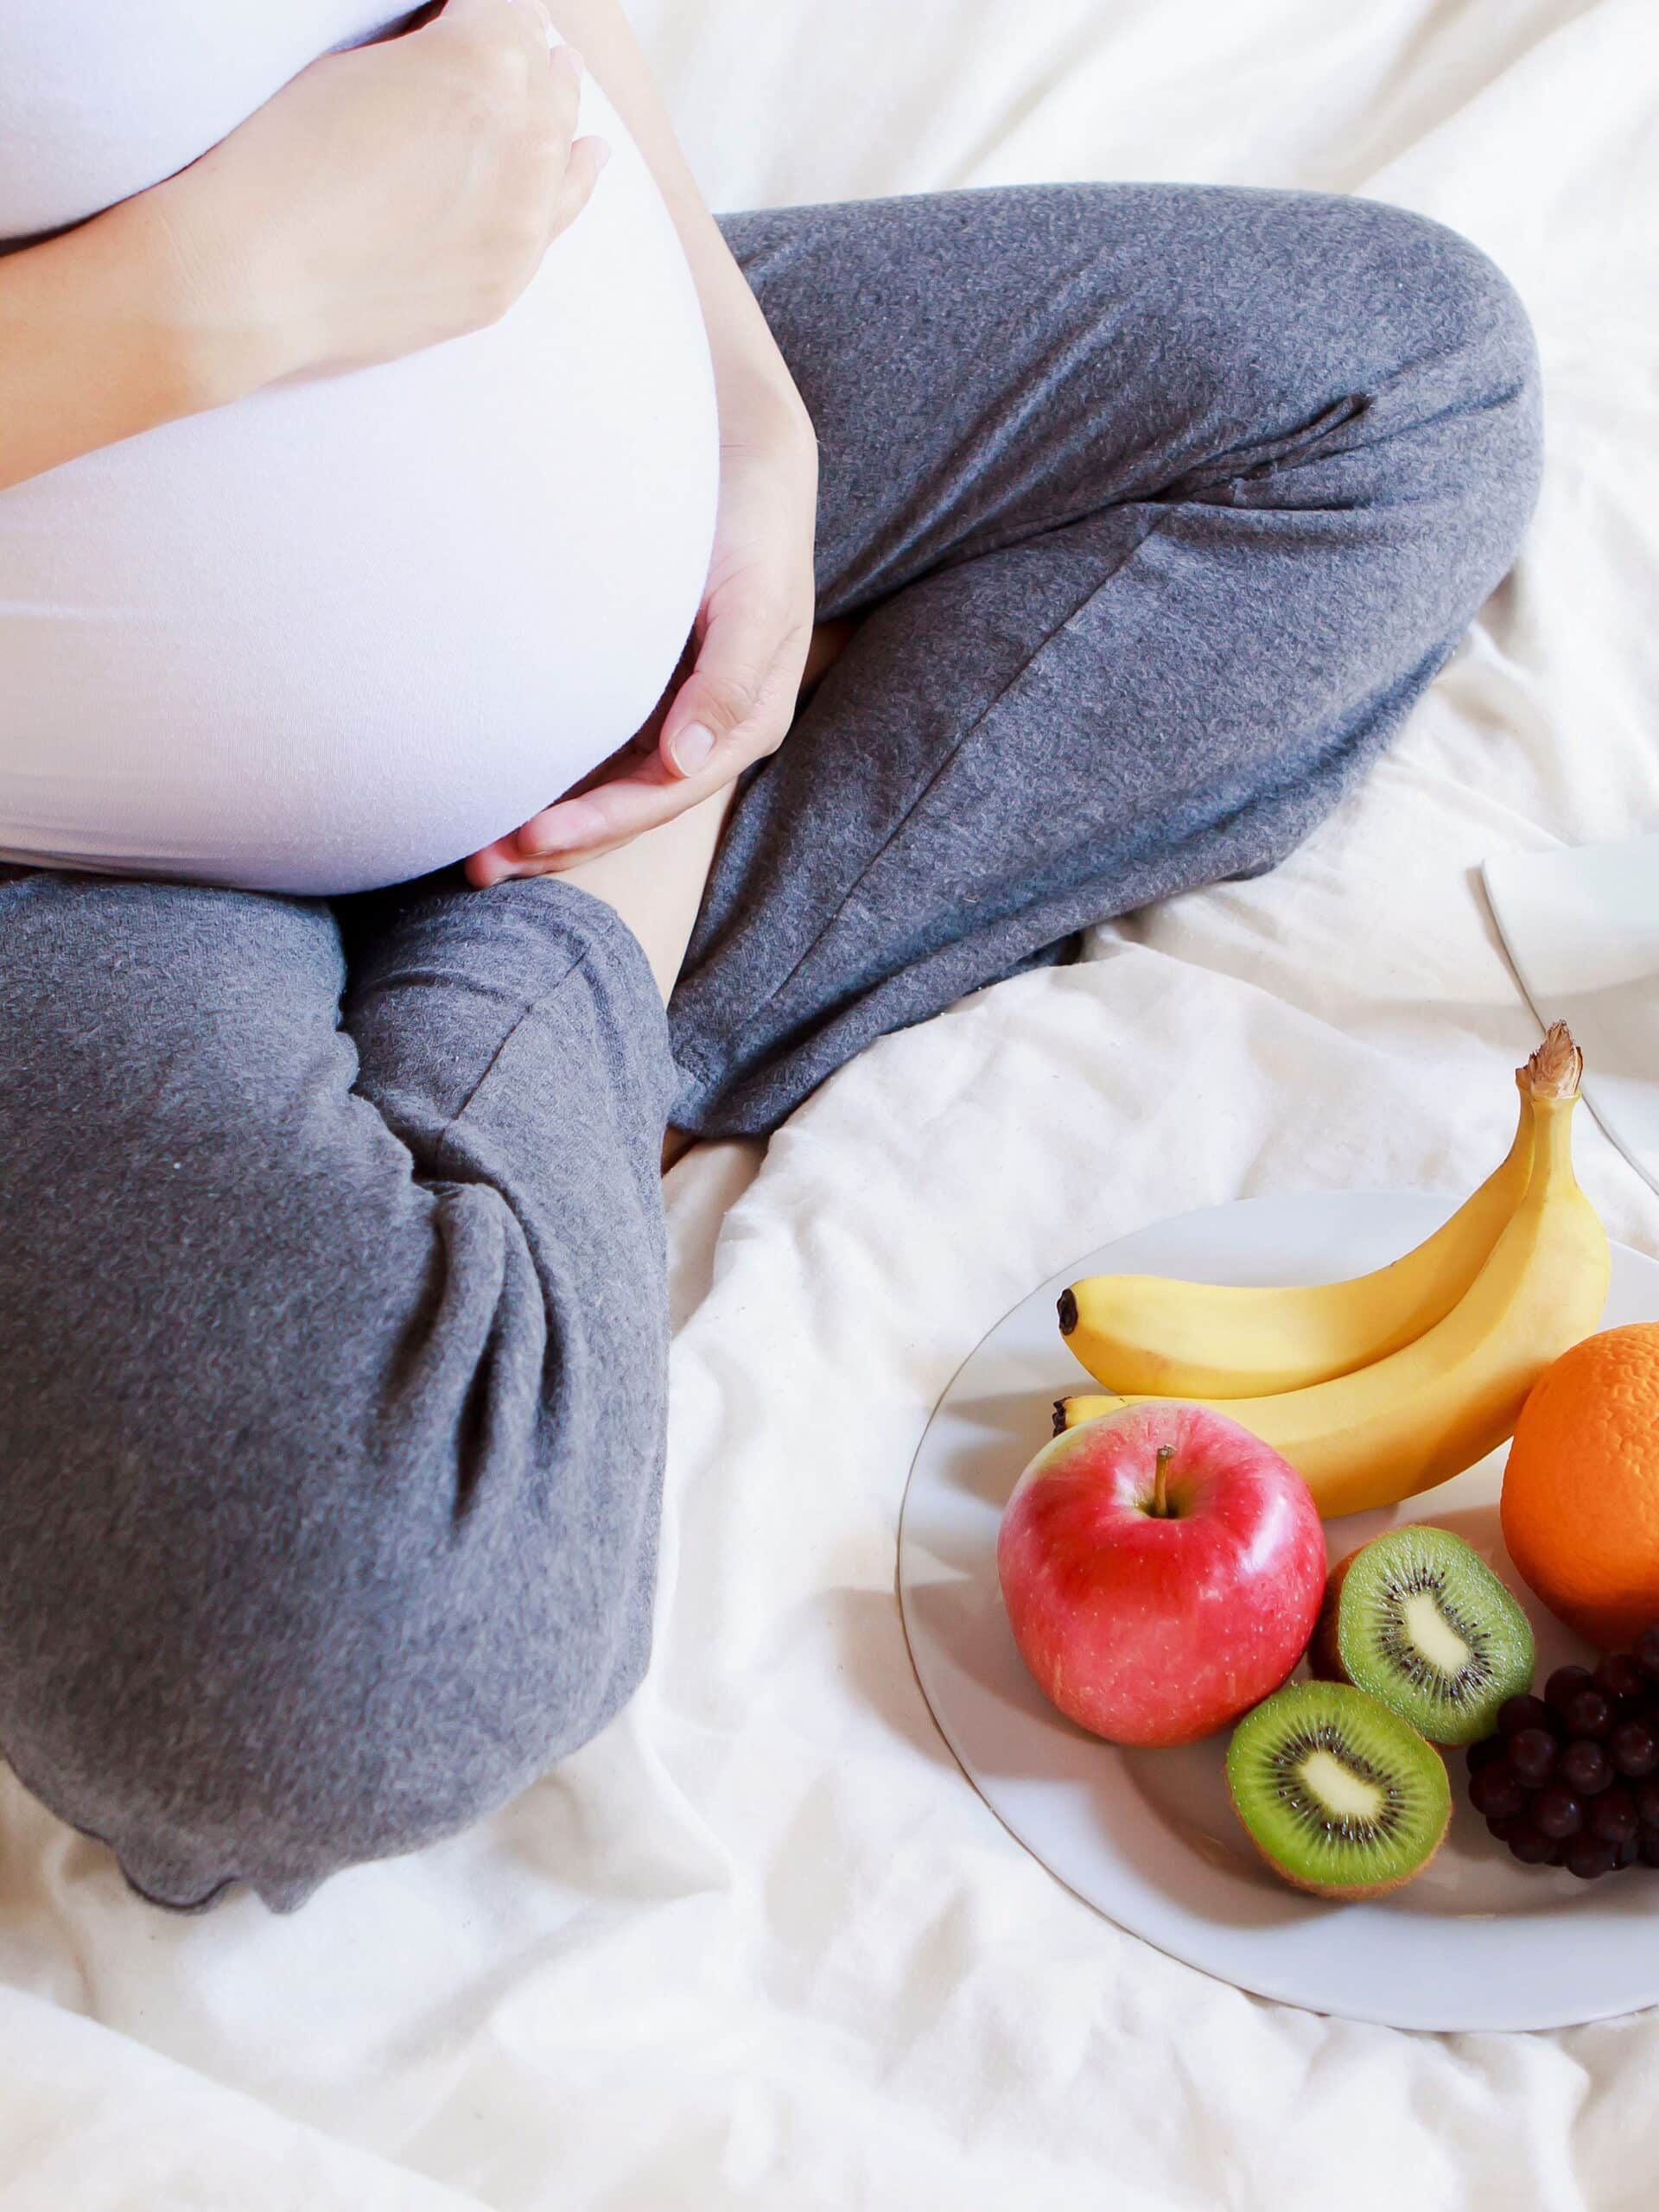 Trim Healthy Mama pregnancy